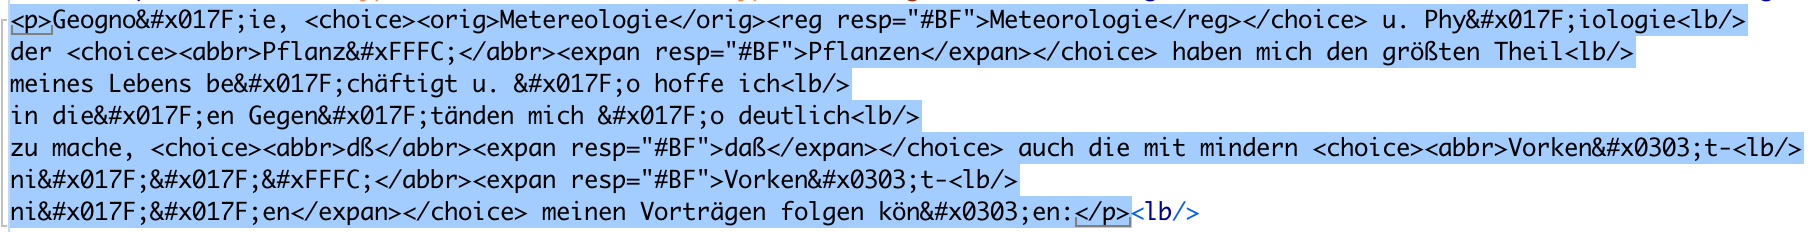 XML-Auszug aus Patzig mit einem Absatz als Beispiel.